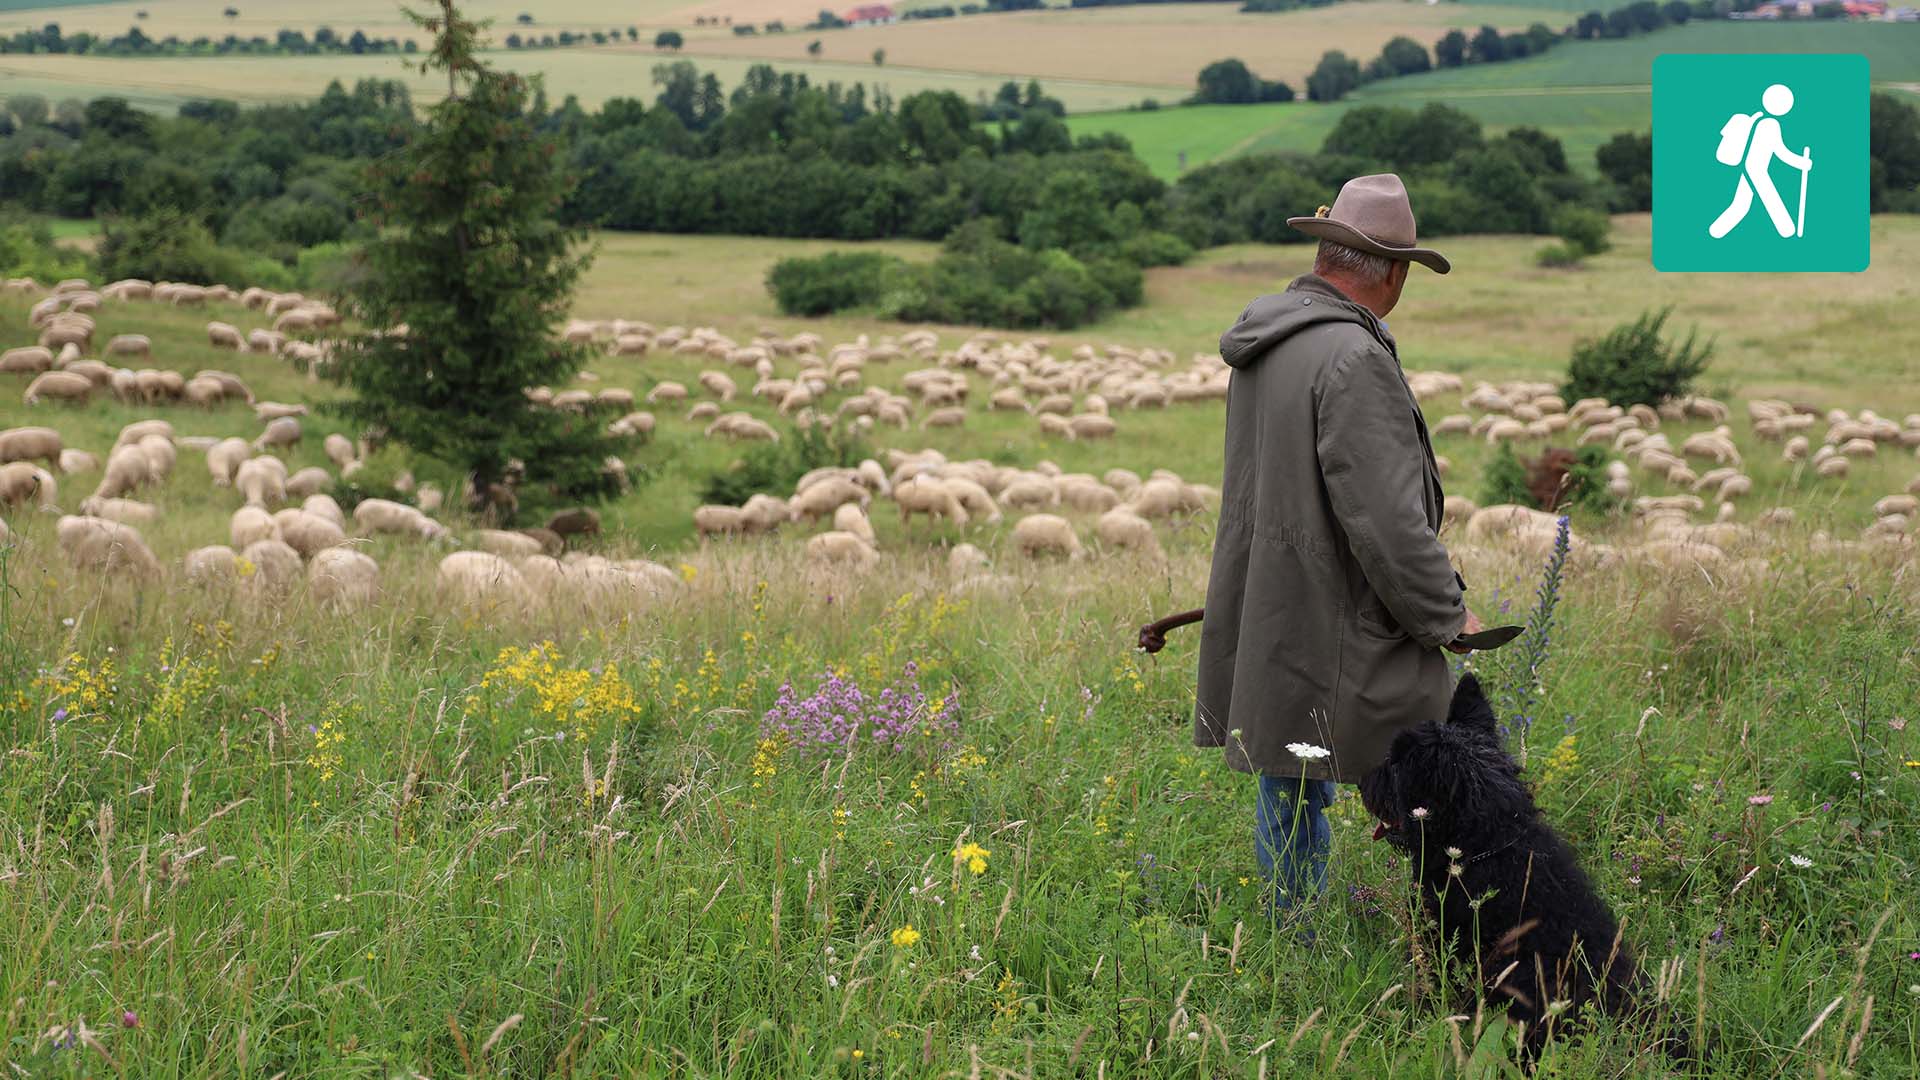 Im Vordergrund ein Schäfer, im Hintergrund Schafe auf einer Wiese mit Baumgruppen.